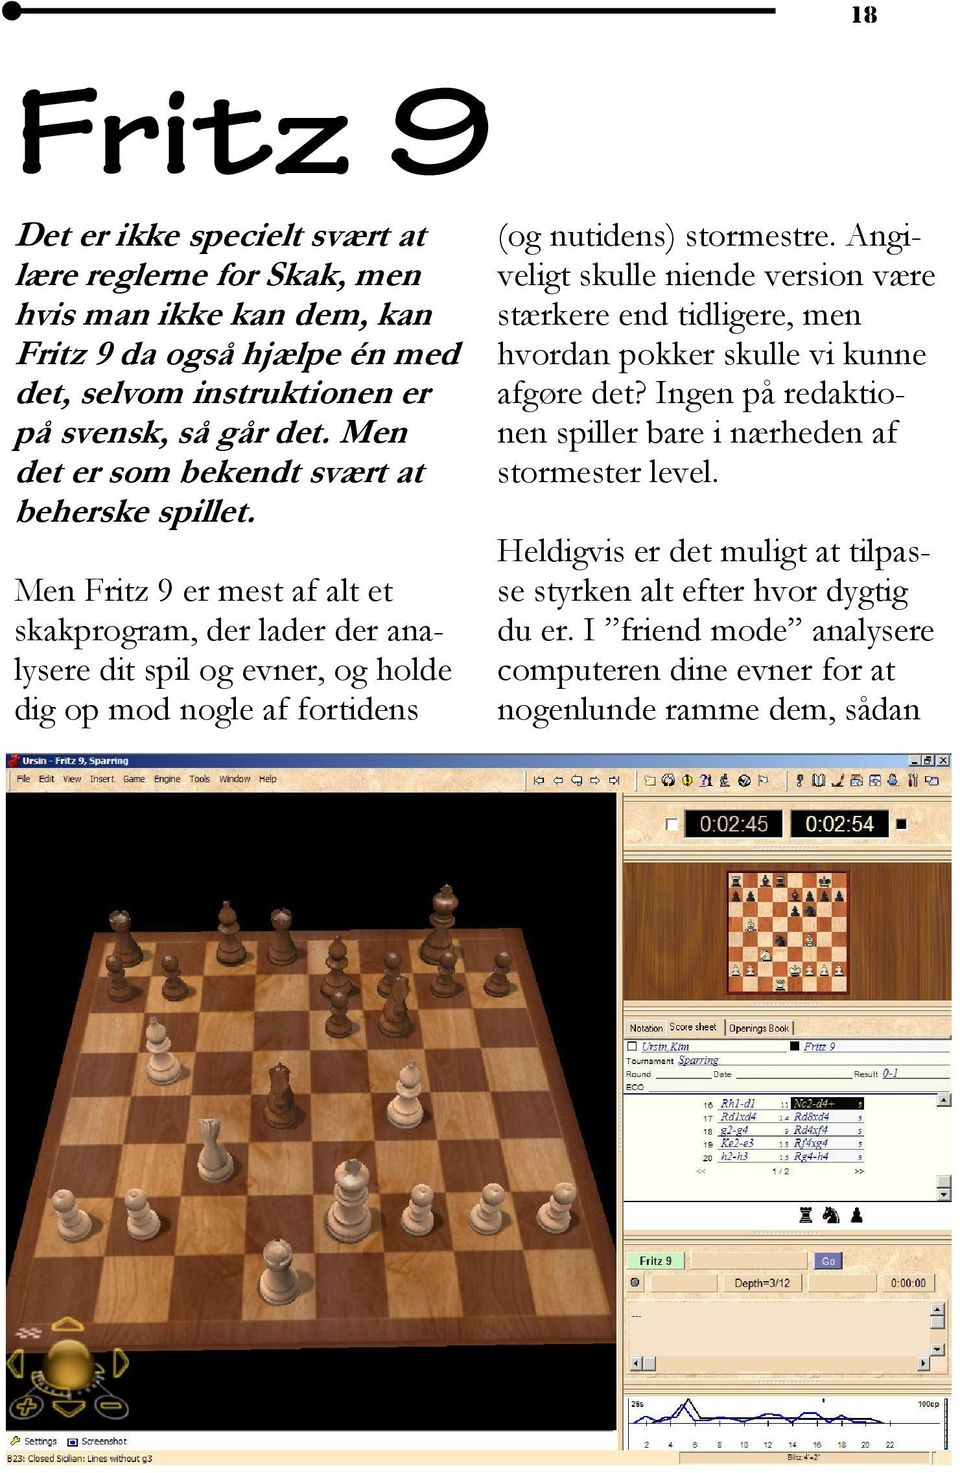 Men Fritz 9 er mest af alt et skakprogram, der lader der analysere dit spil og evner, og holde dig op mod nogle af fortidens (og nutidens) stormestre.